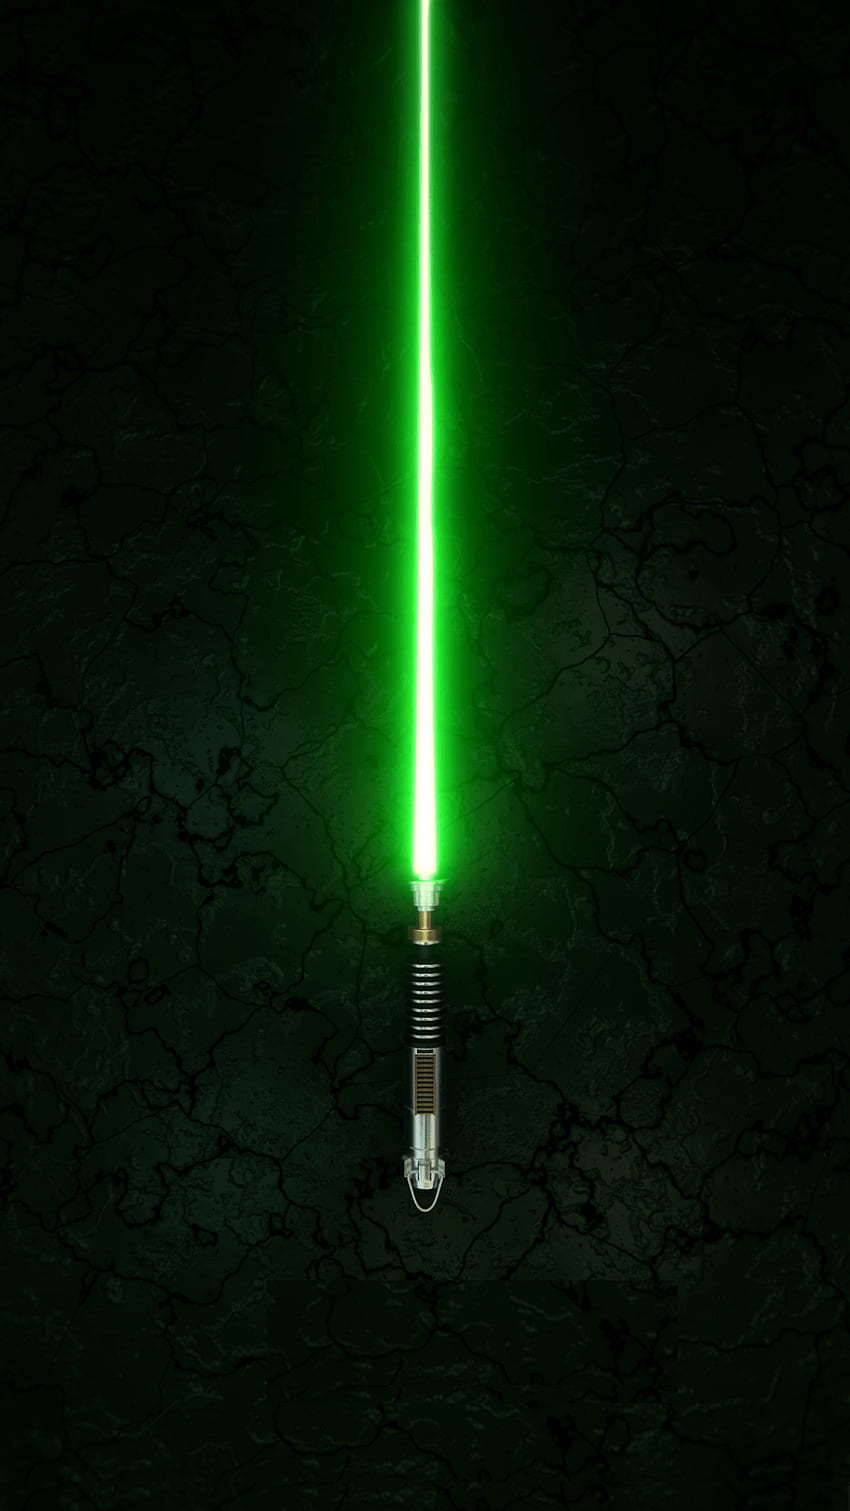 Ketuk Star Wars Lightsaber Untuk Melihat Lebih Seru Star Wars Mobile, Star Wars Live wallpaper ponsel HD